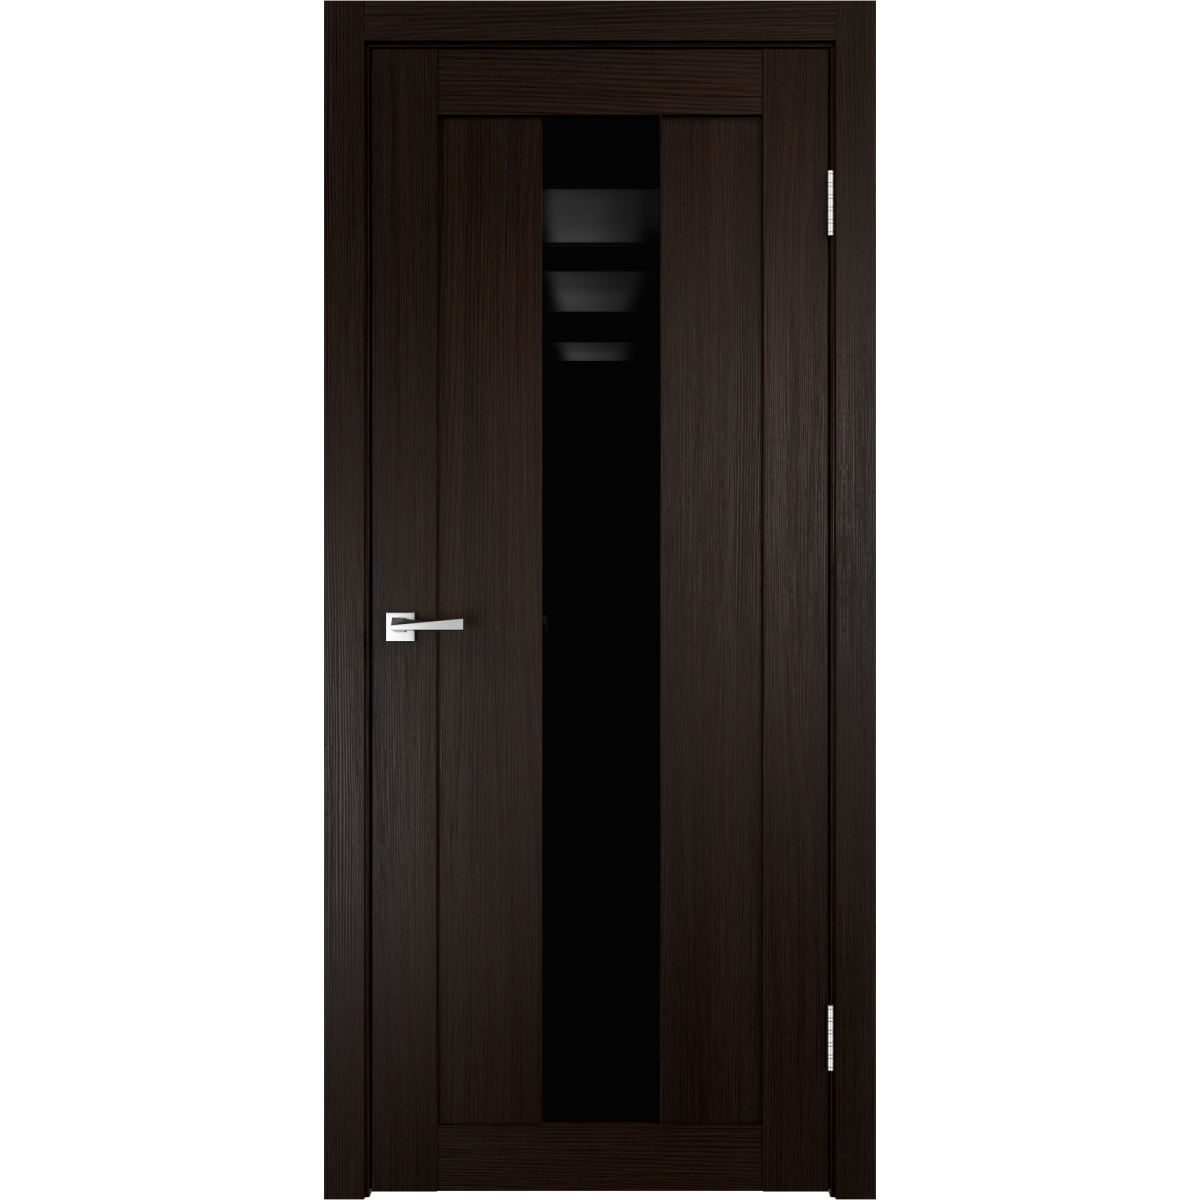 Дверь межкомнатная остеклённая Фортуна 60x200 см, ПВХ, цвет венге